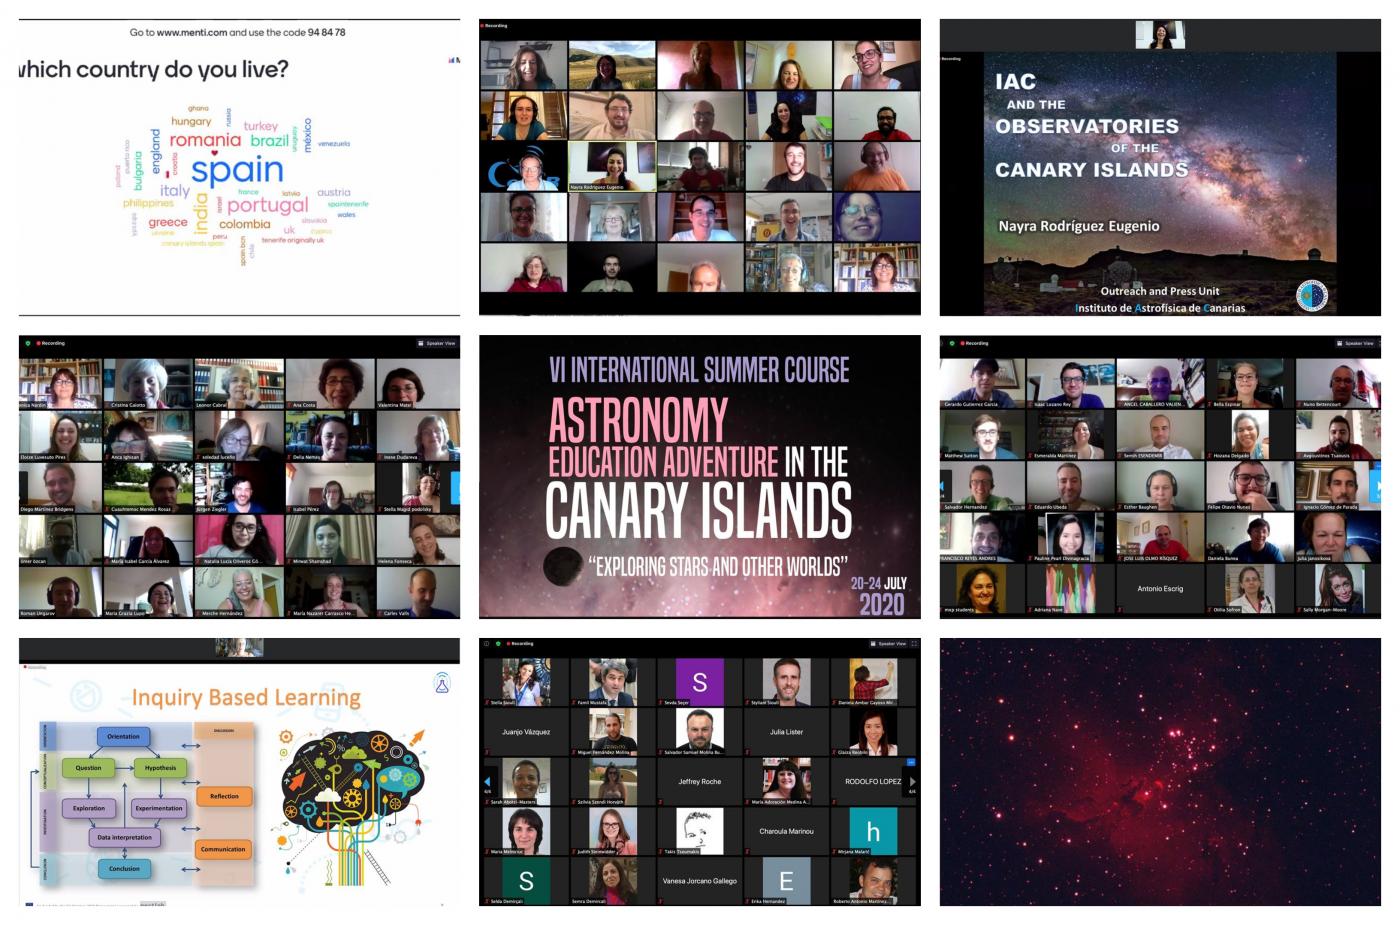 Mosaico de fotos del curso virtual "Astronomy Education Adventure in the Canary Islands 2020"